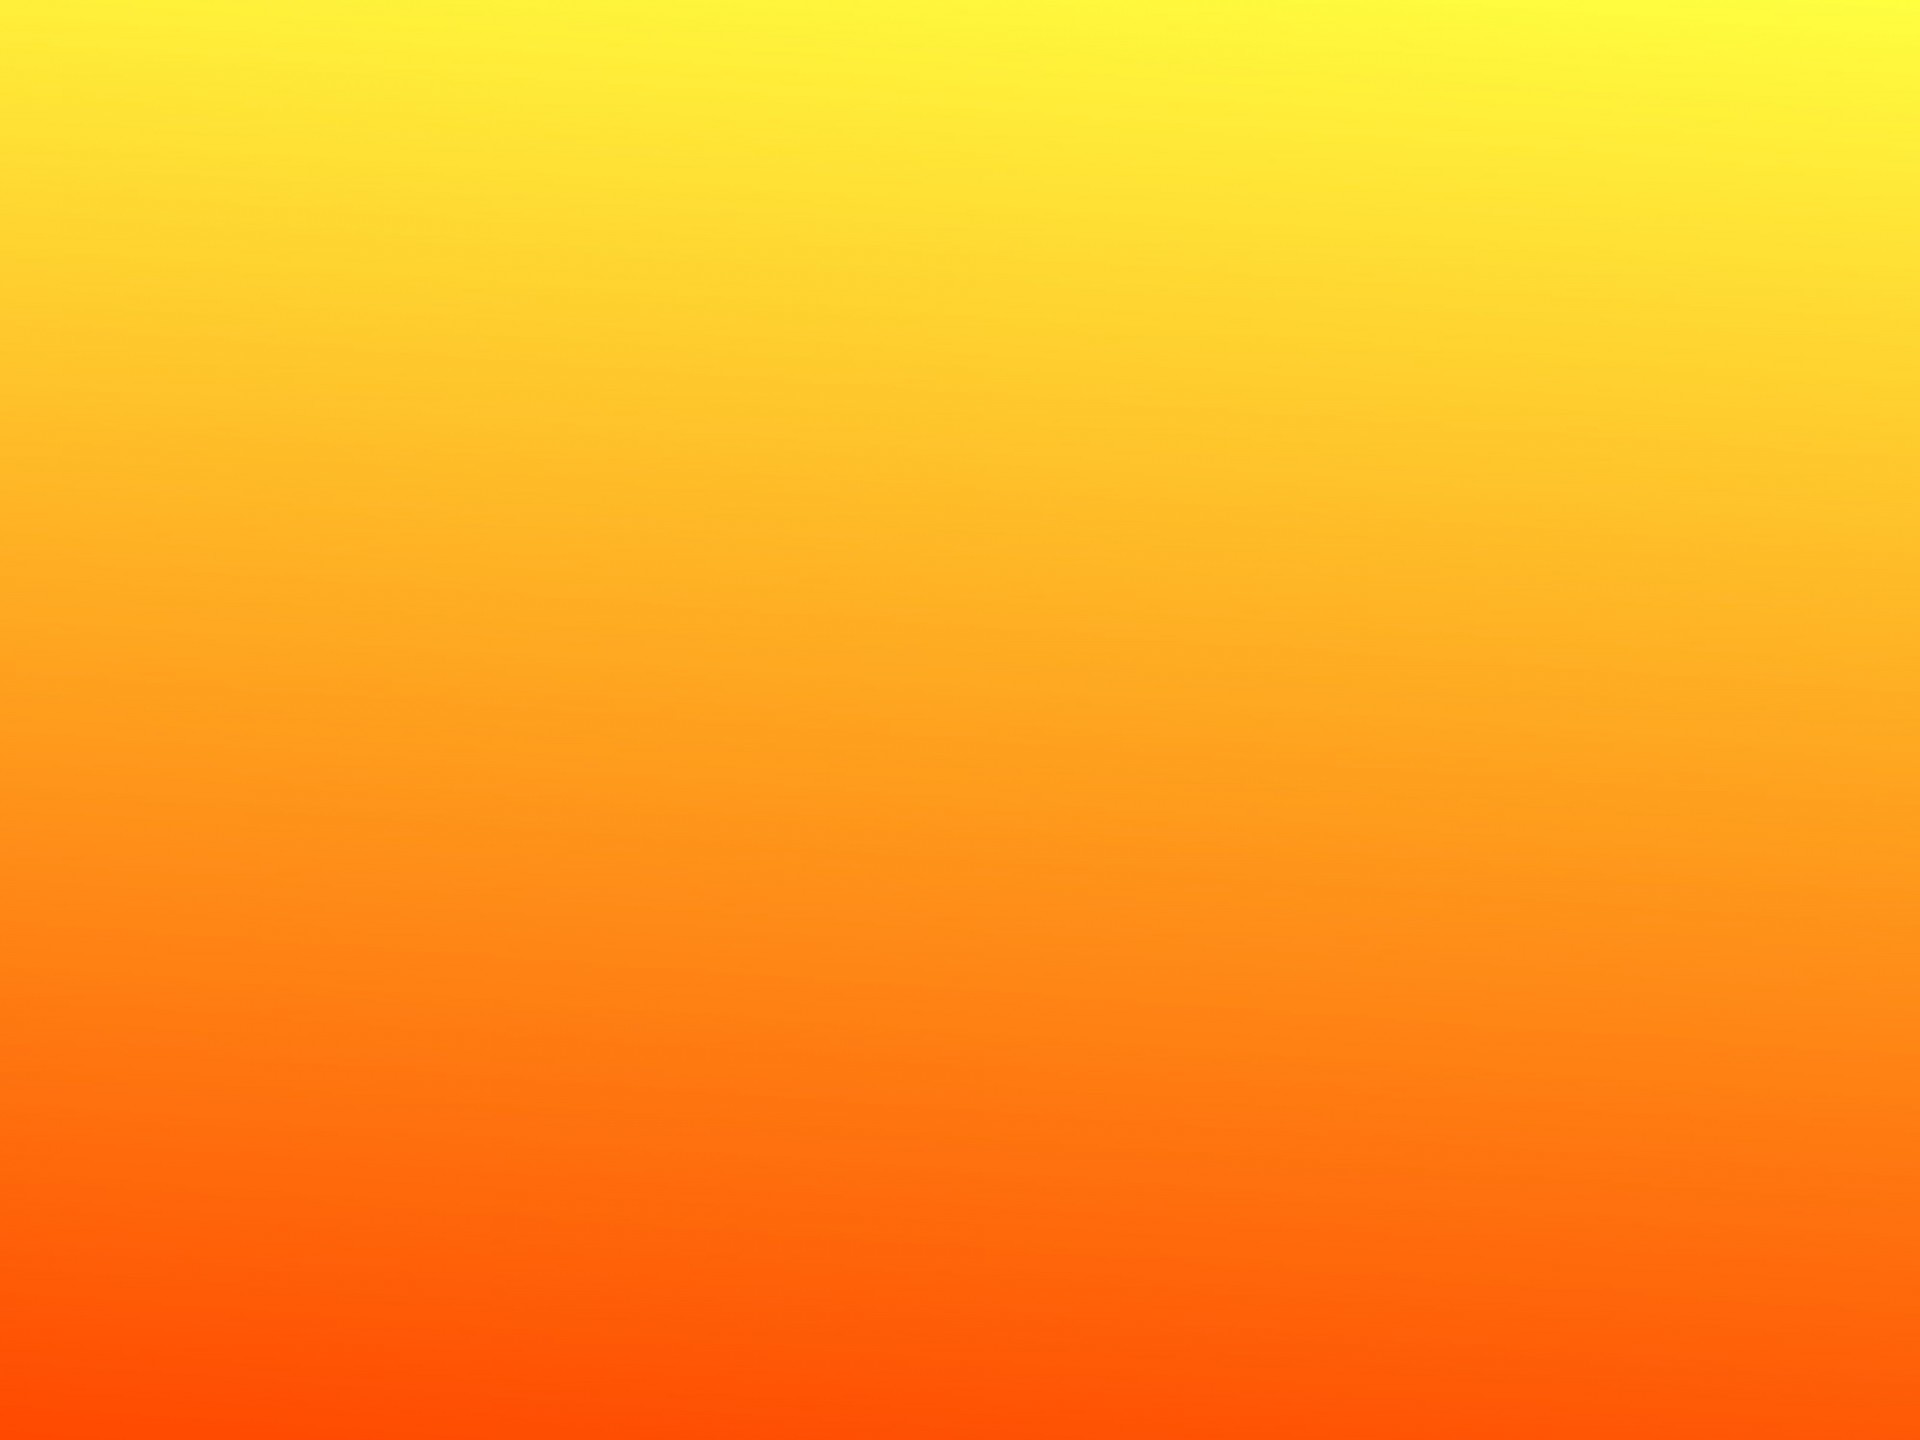 Orange Background Images